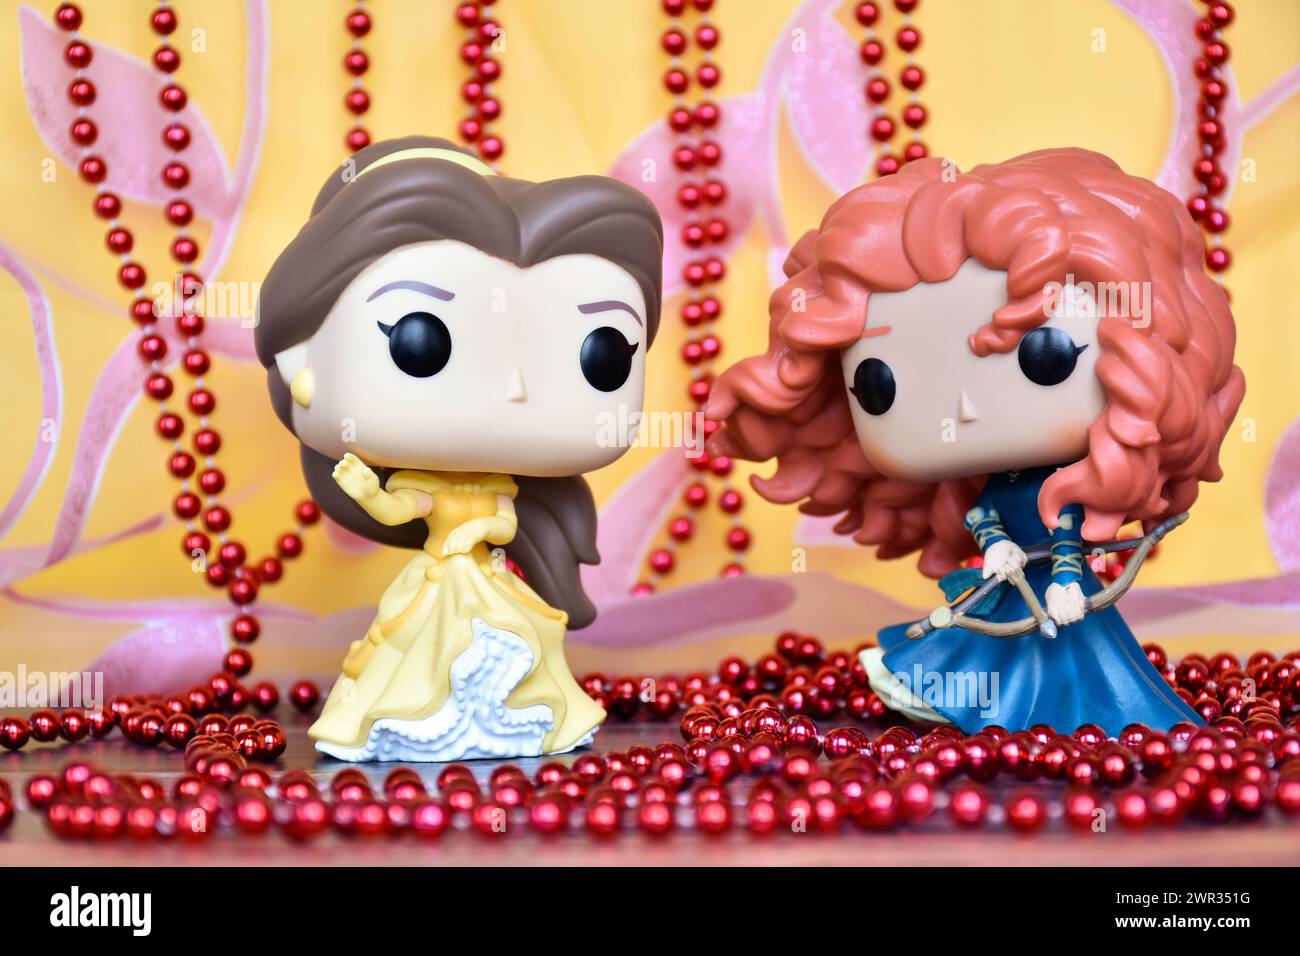 Funko Pop Actionfiguren der Disney Prinzessinnen Belle (die Schönheit und das Biest) und Merida (die Tapferkeit). Goldener rosa Vorhang, rote Halskette, fabelhafter Palast. Stockfoto